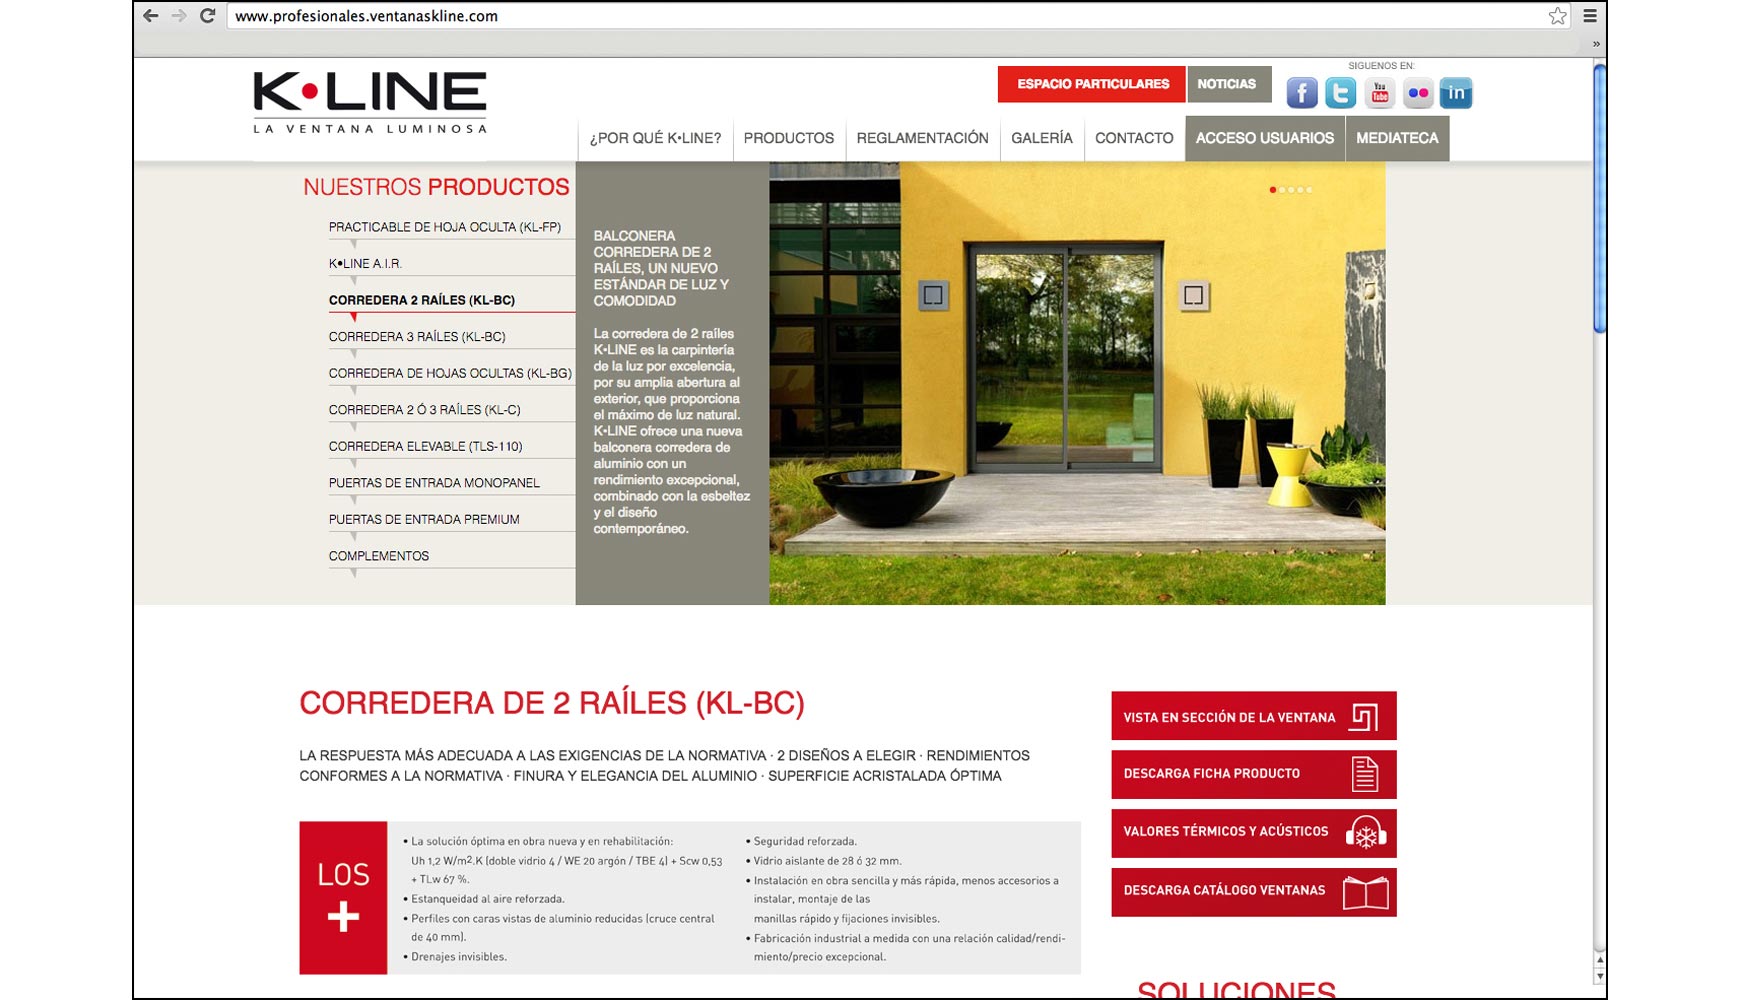 La nueva web incluye informacin detallada para profesionales de todos los productos de K-Line